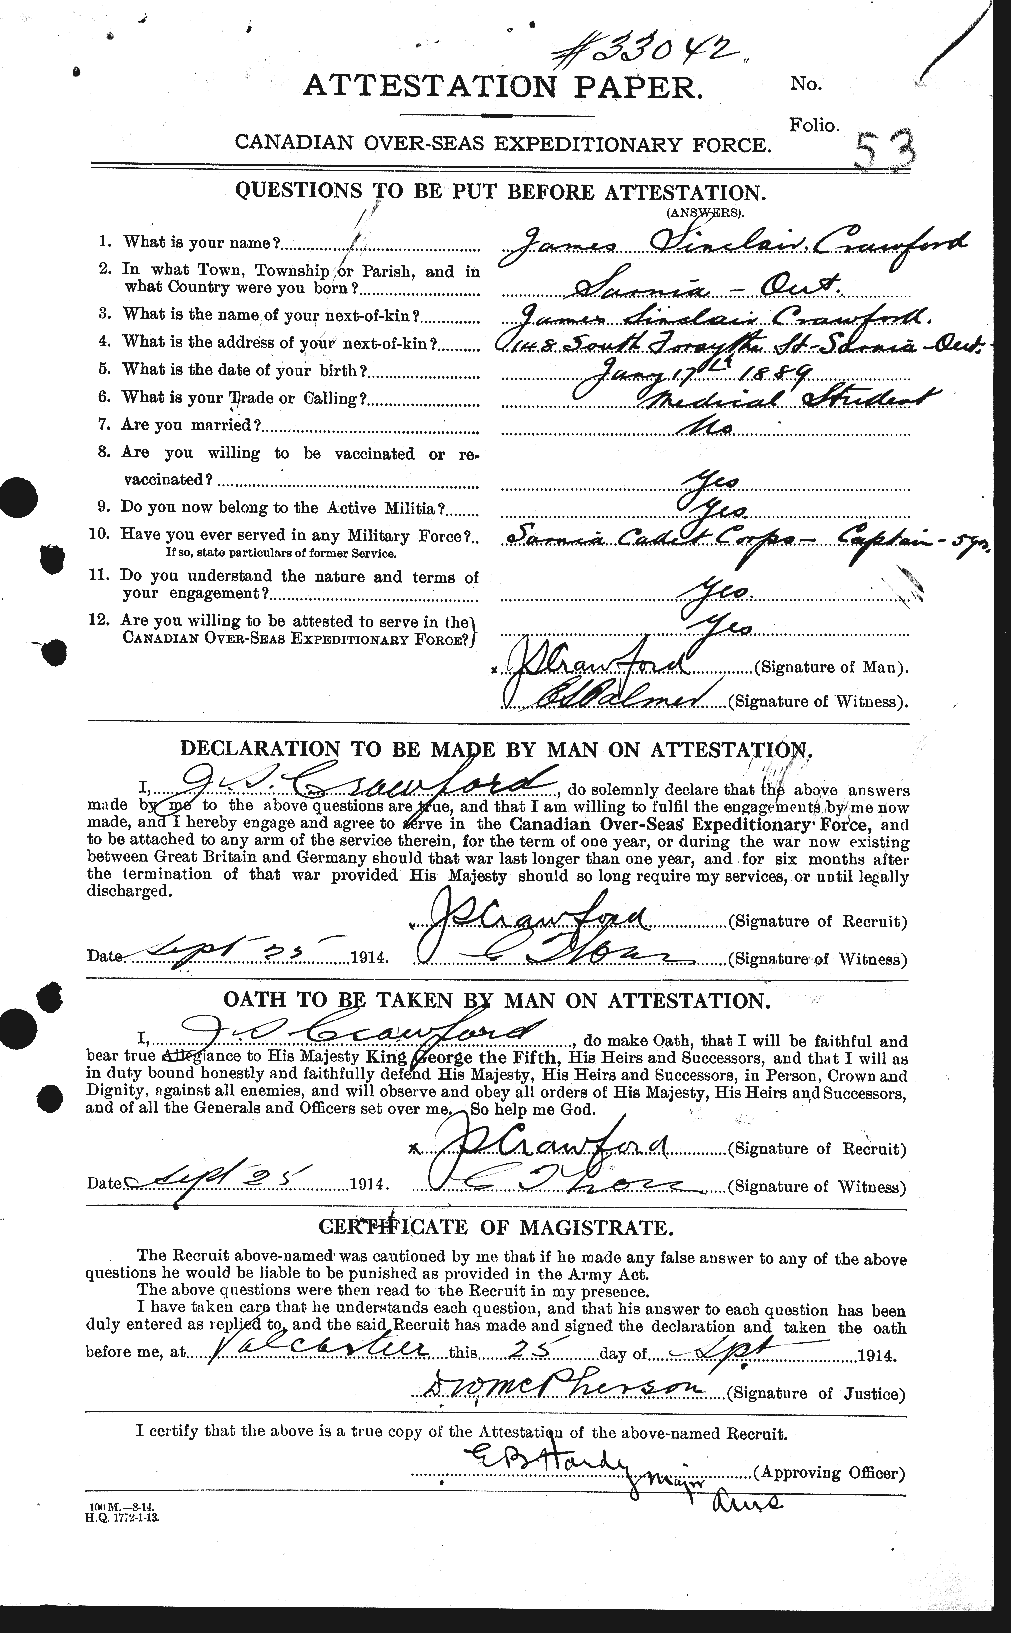 Dossiers du Personnel de la Première Guerre mondiale - CEC 062467a